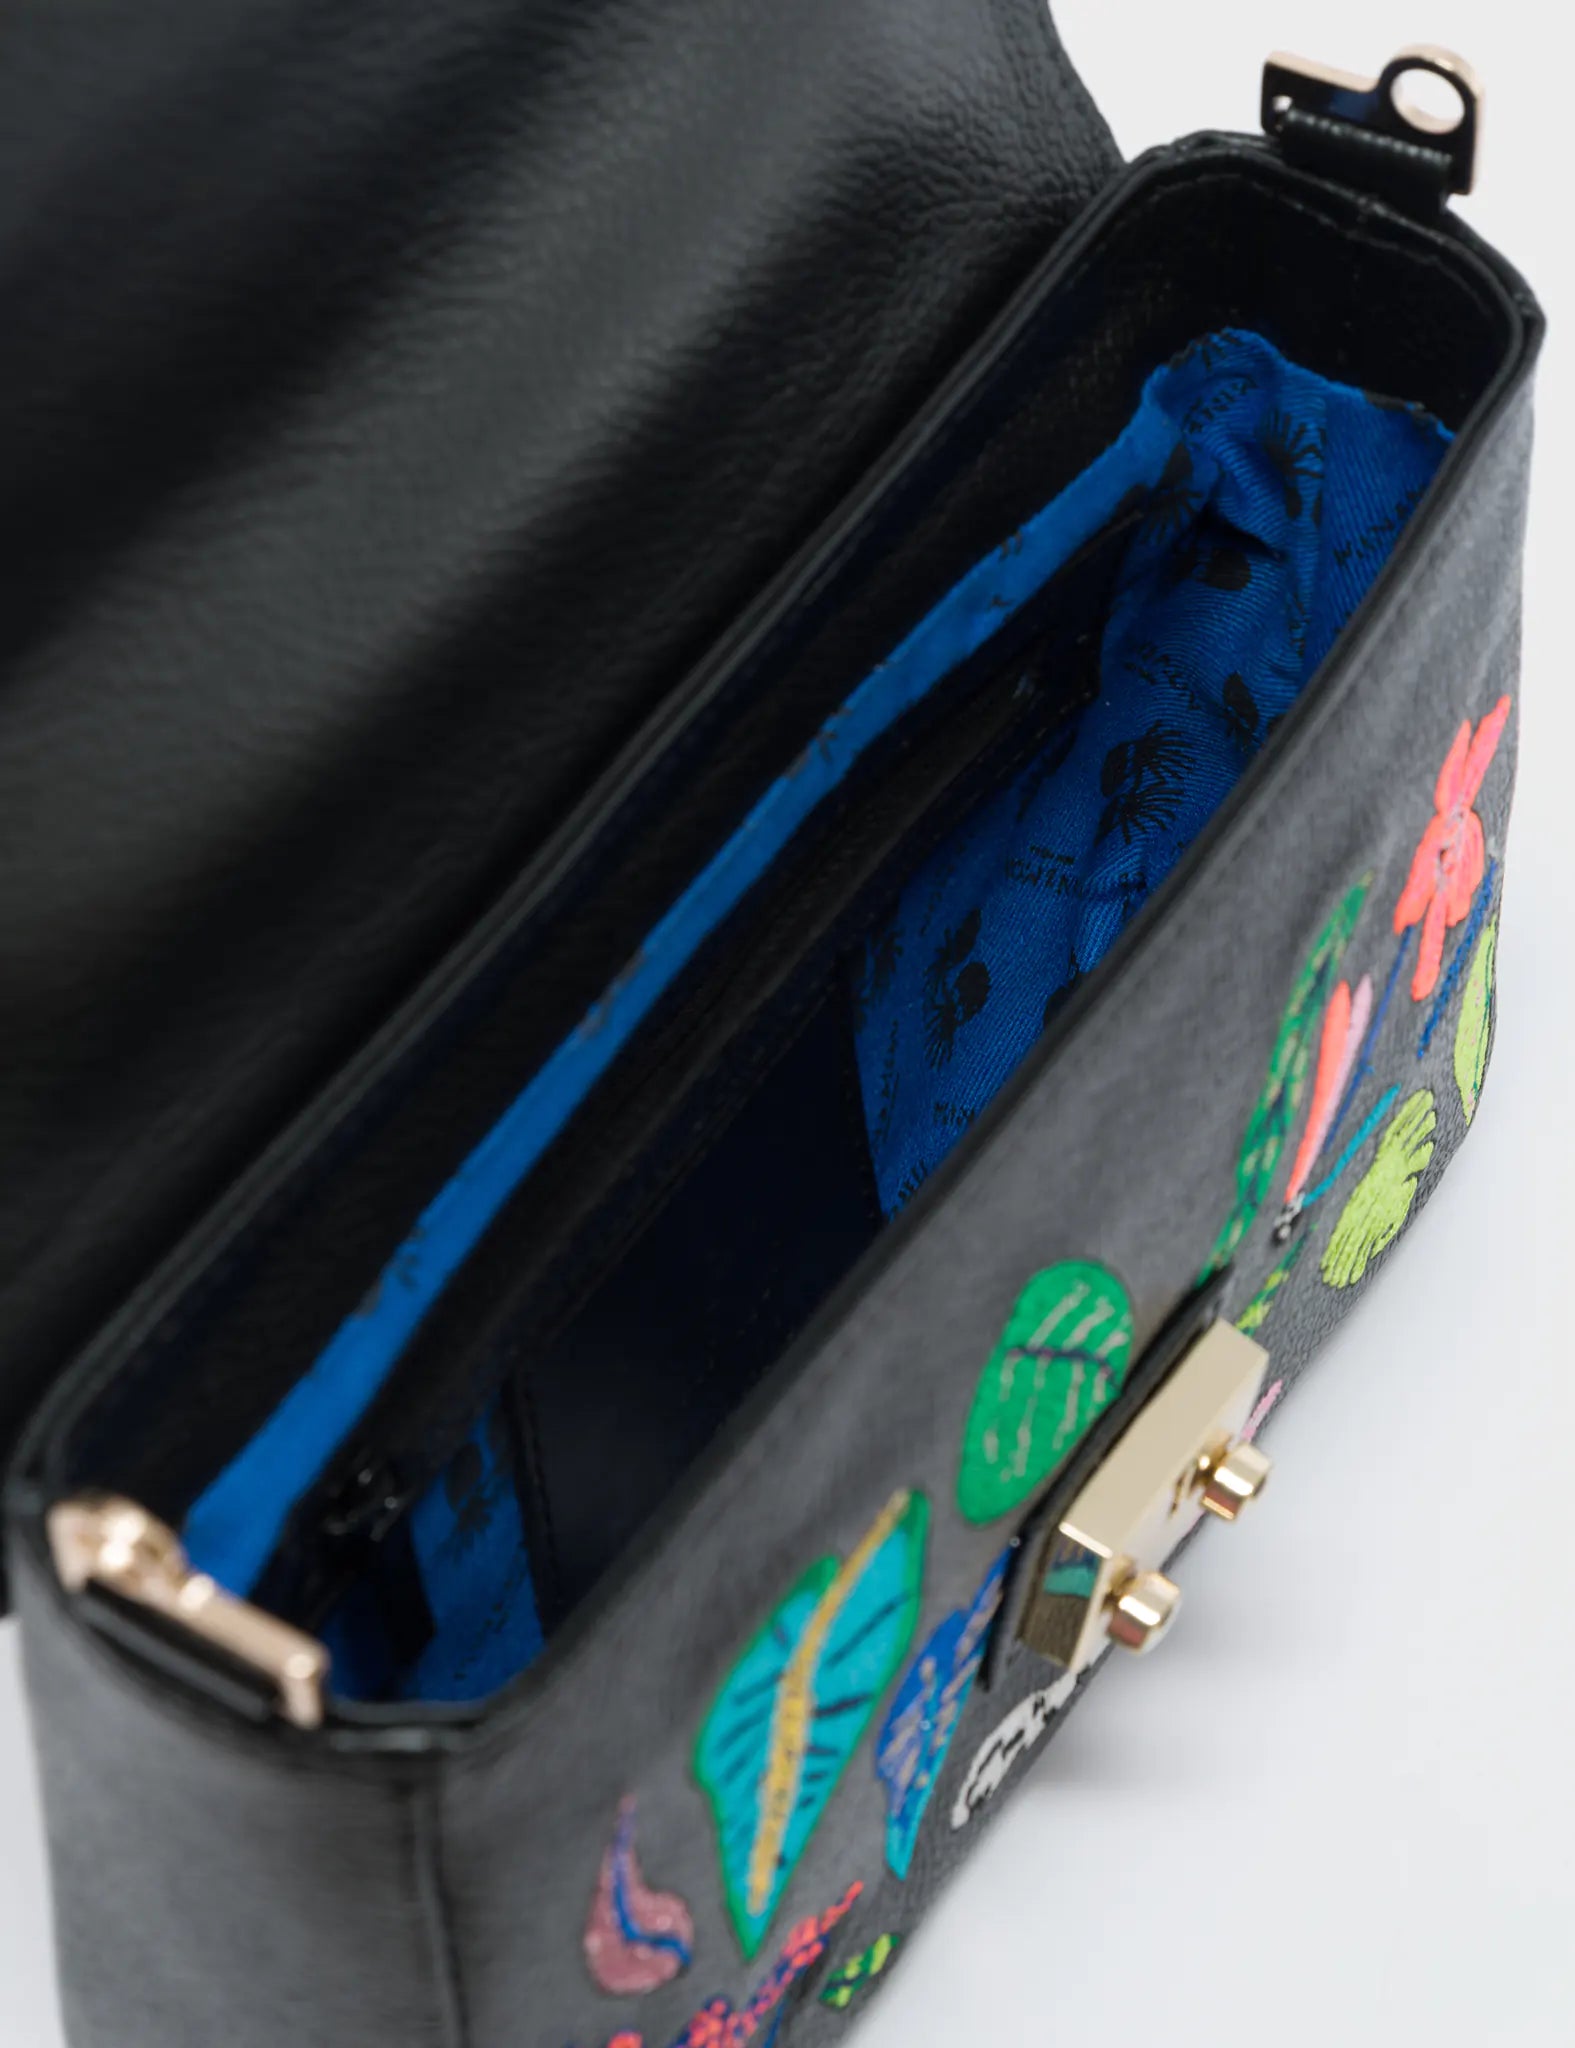 Amantis Cameo Black Leather Crossbody Mini Handbag - El Trópico Embroidery Design - Inside